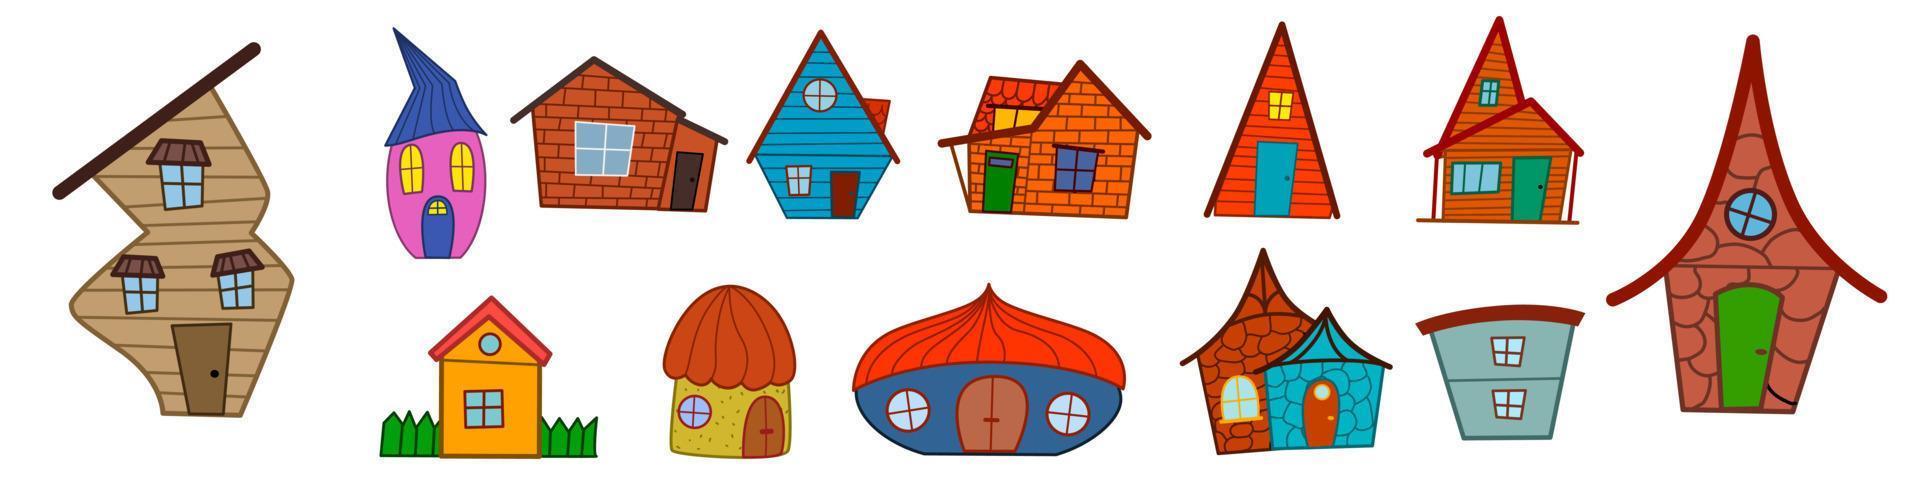 een set gekleurde huizen in de stijl van een doodle op een witte achtergrond. vector